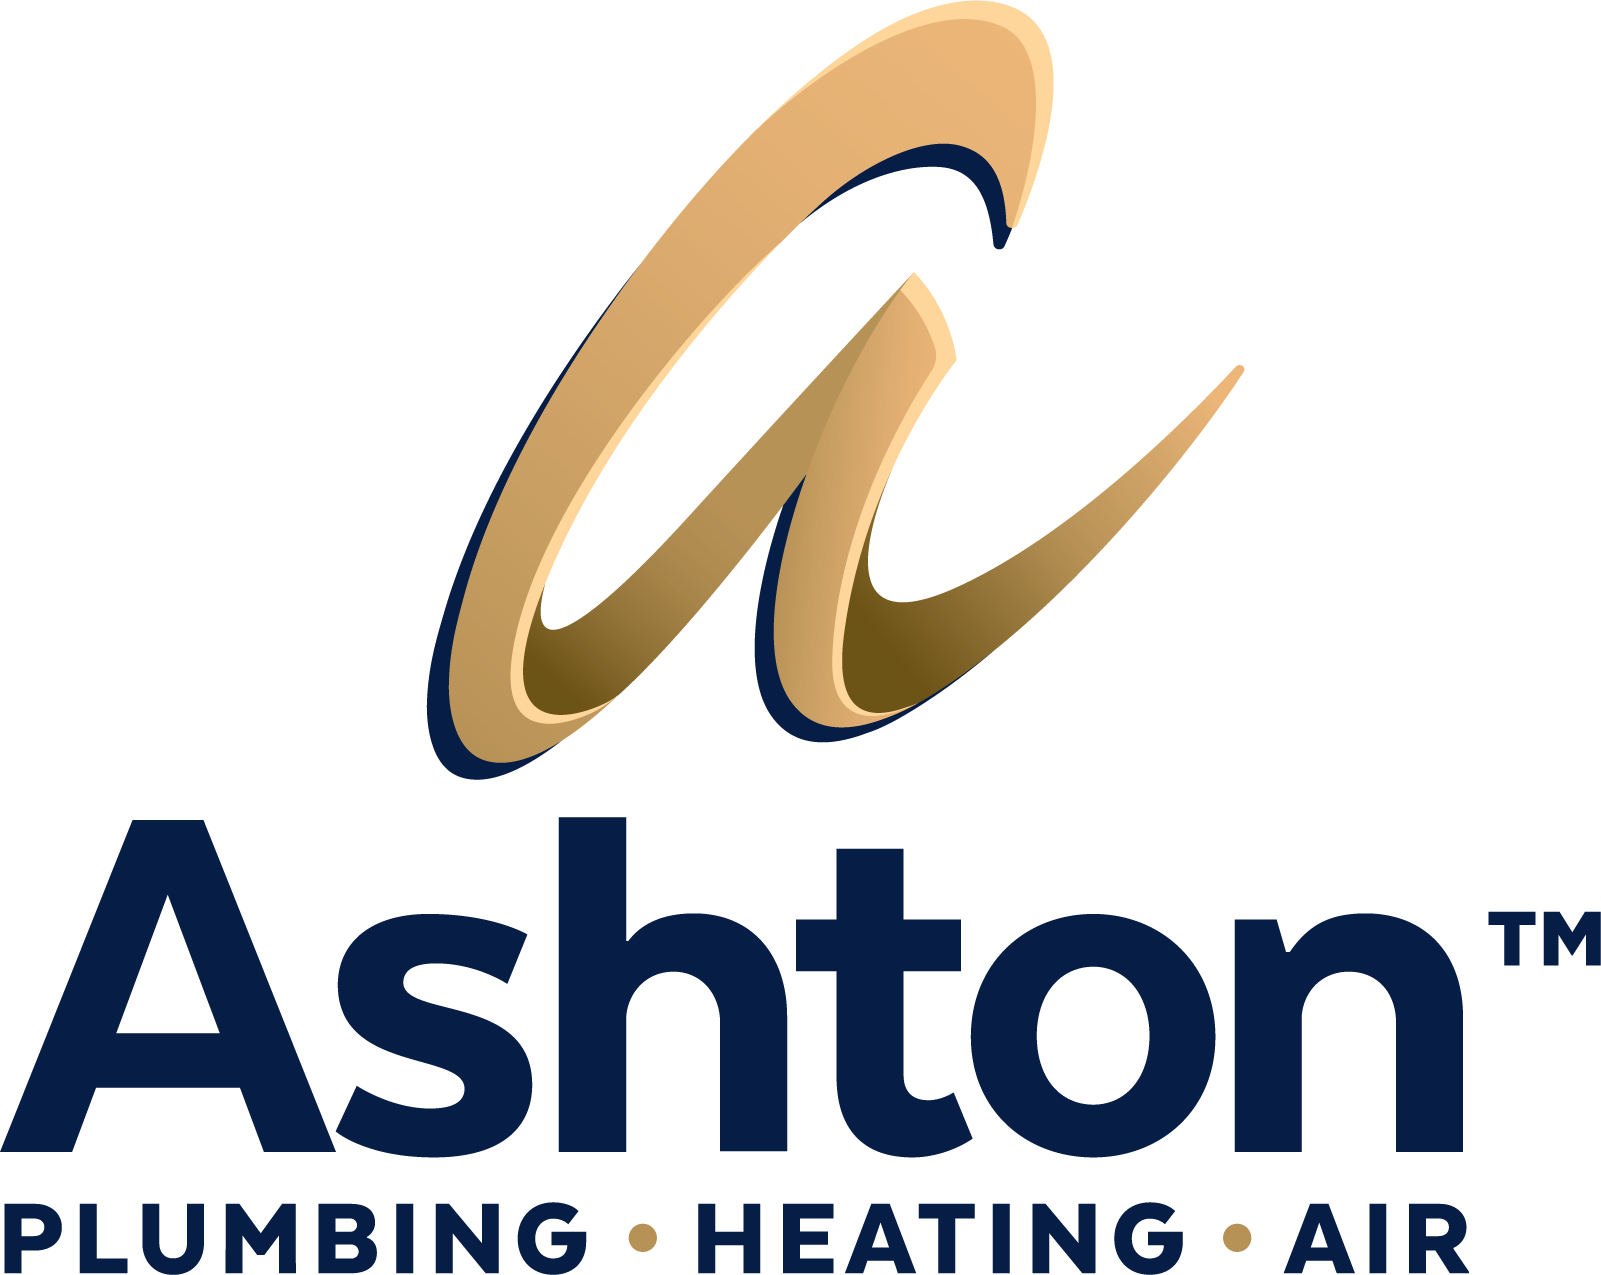 Ashton Service Group's logo